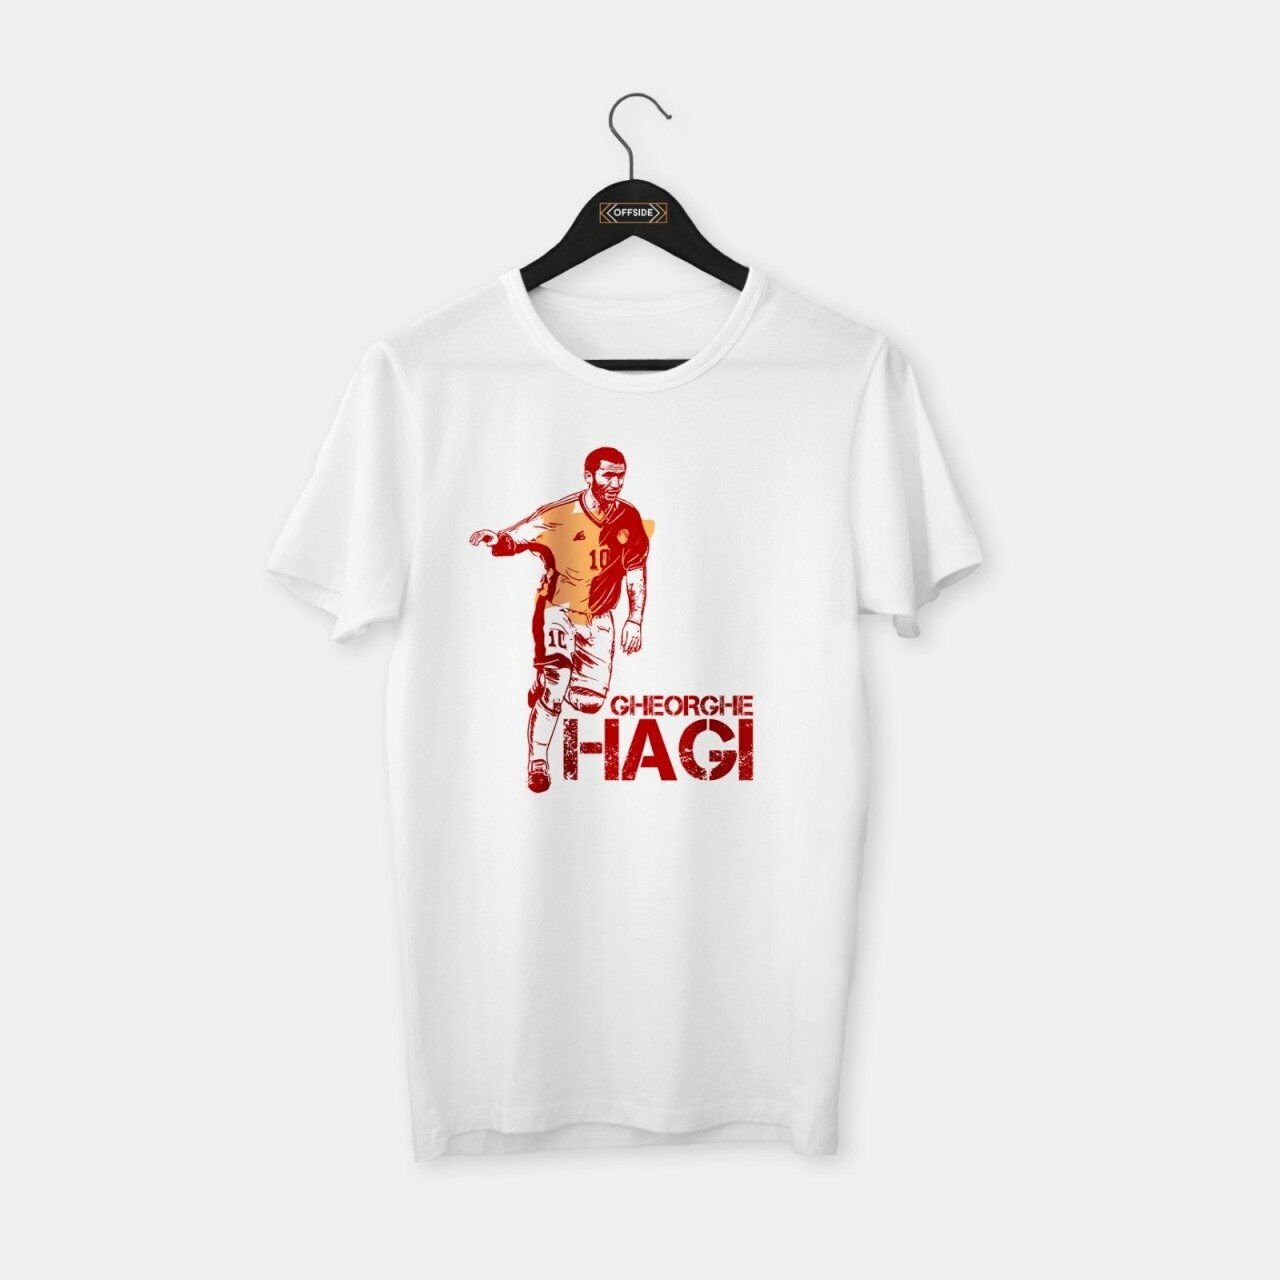 Hagi T-shirt